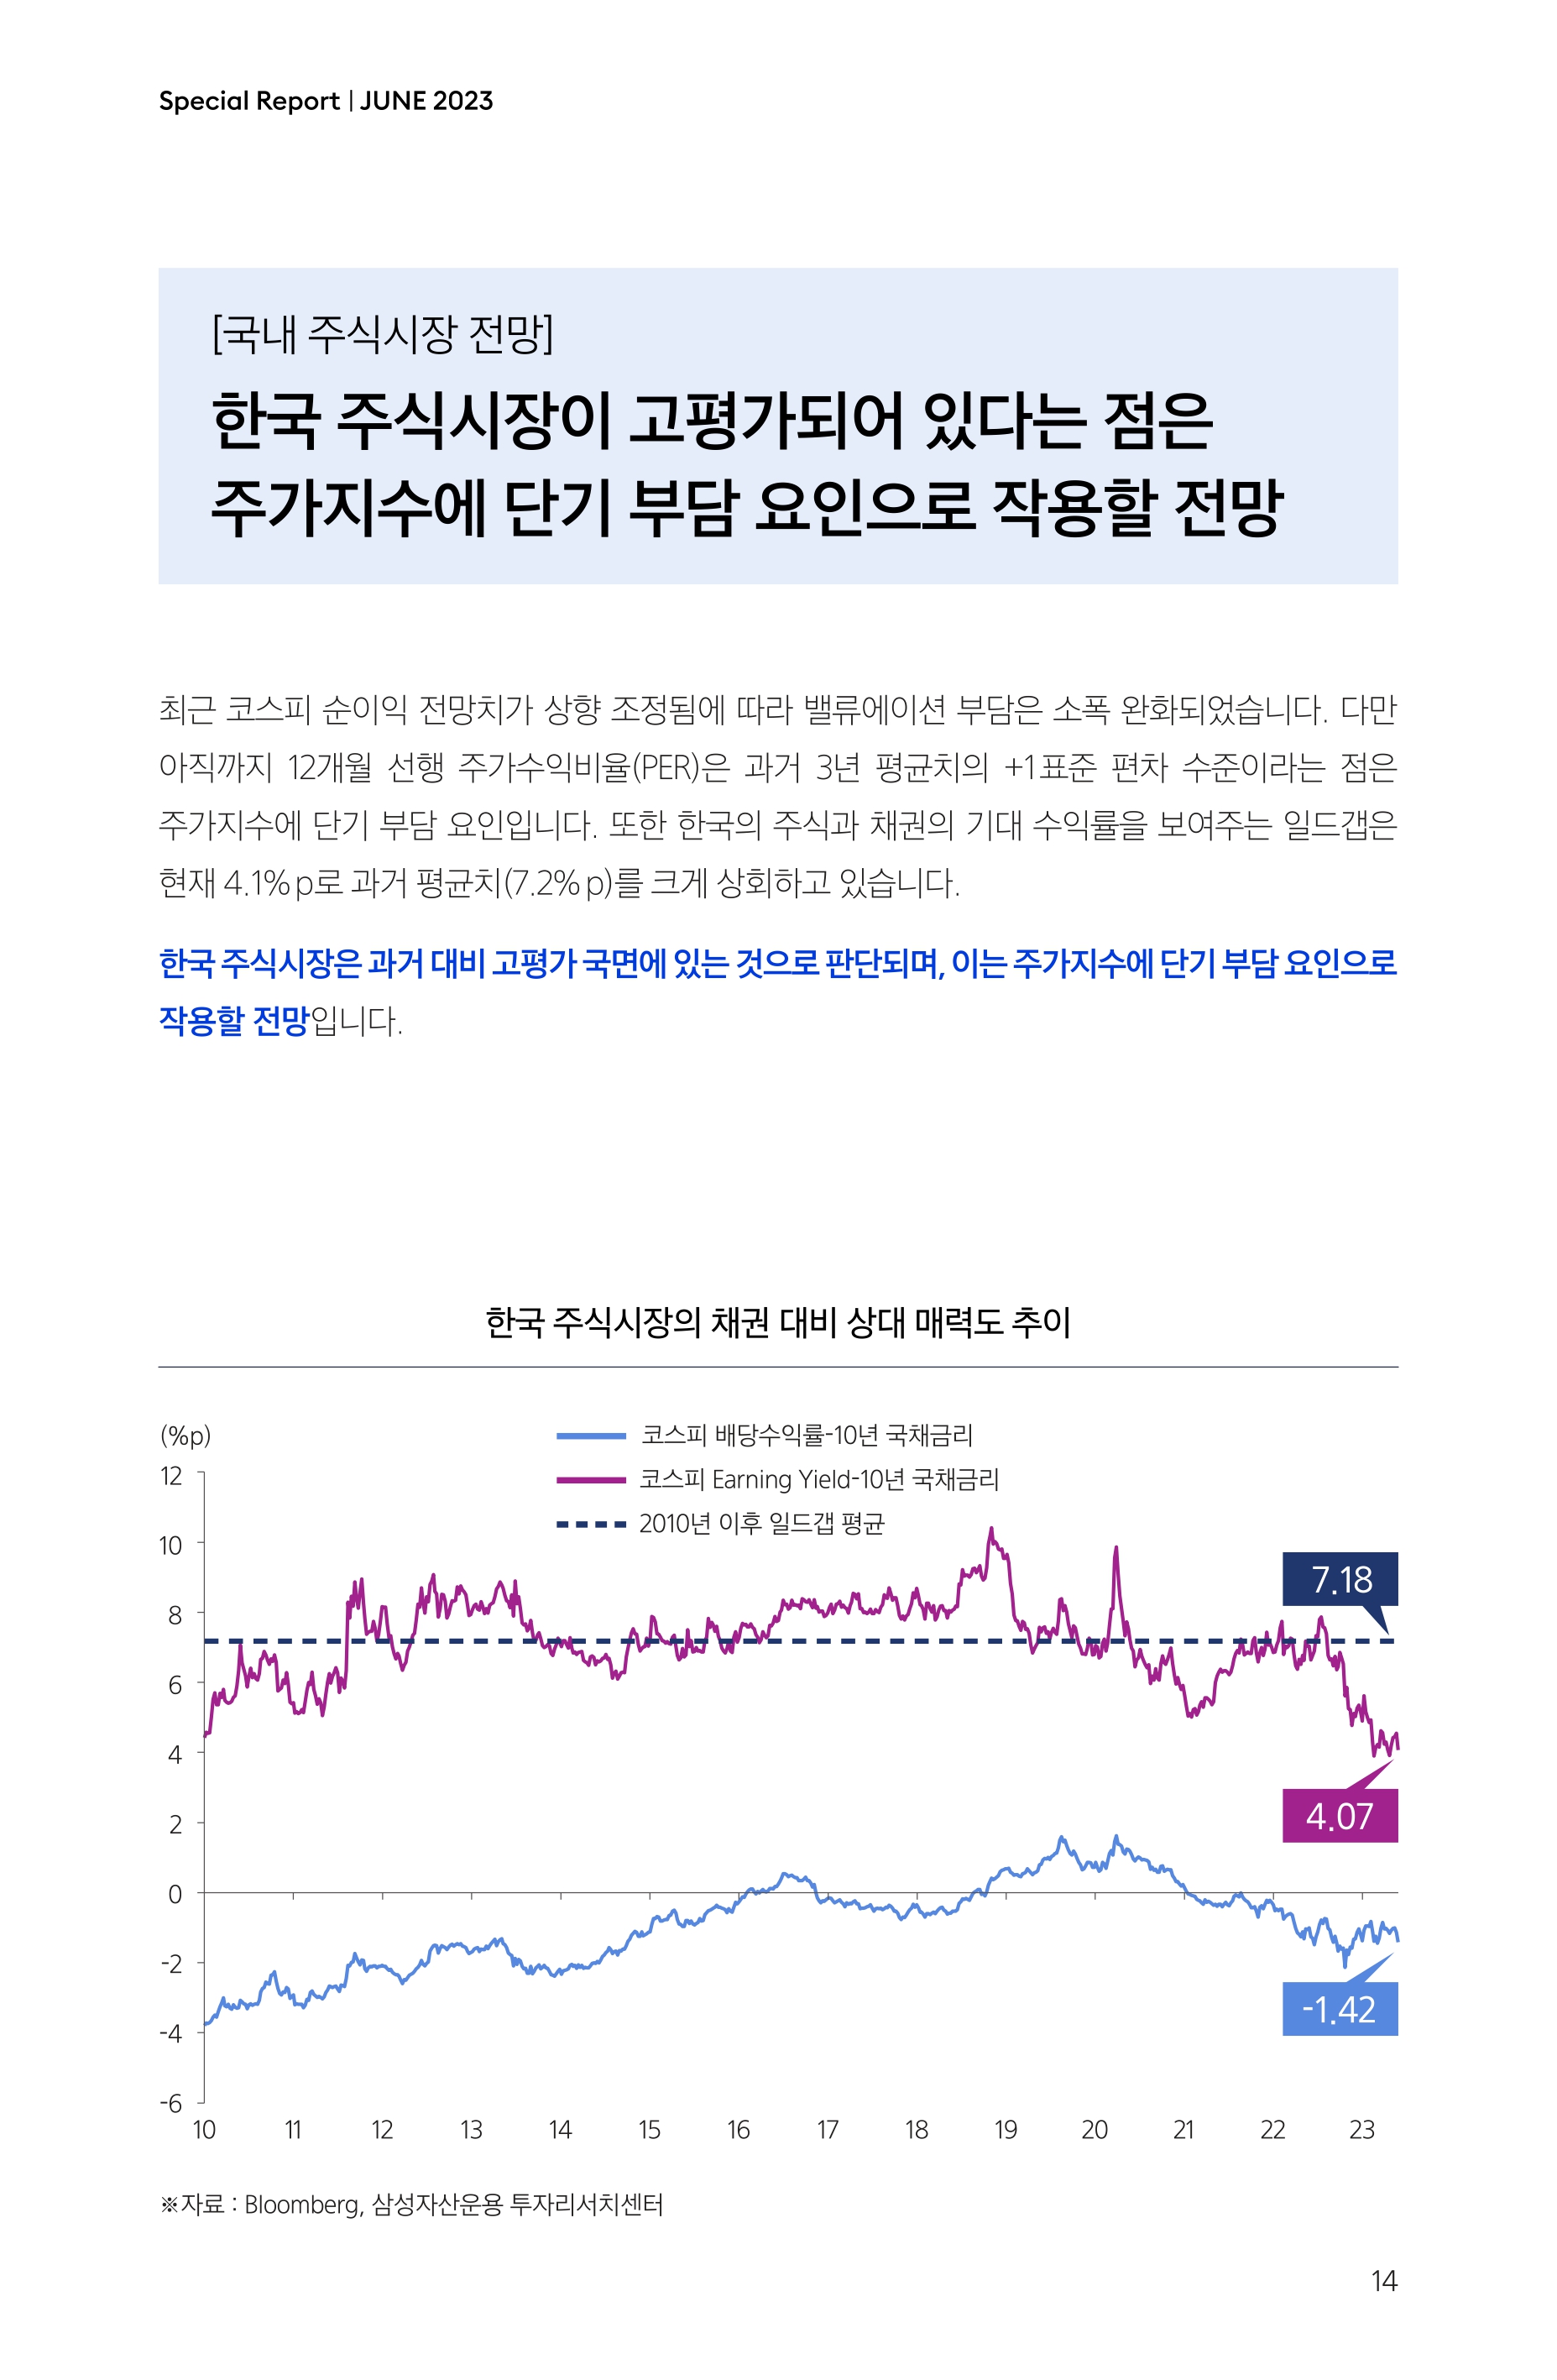 Samsung Global Market Outlook(낱장)_202306_page-0014.jpg